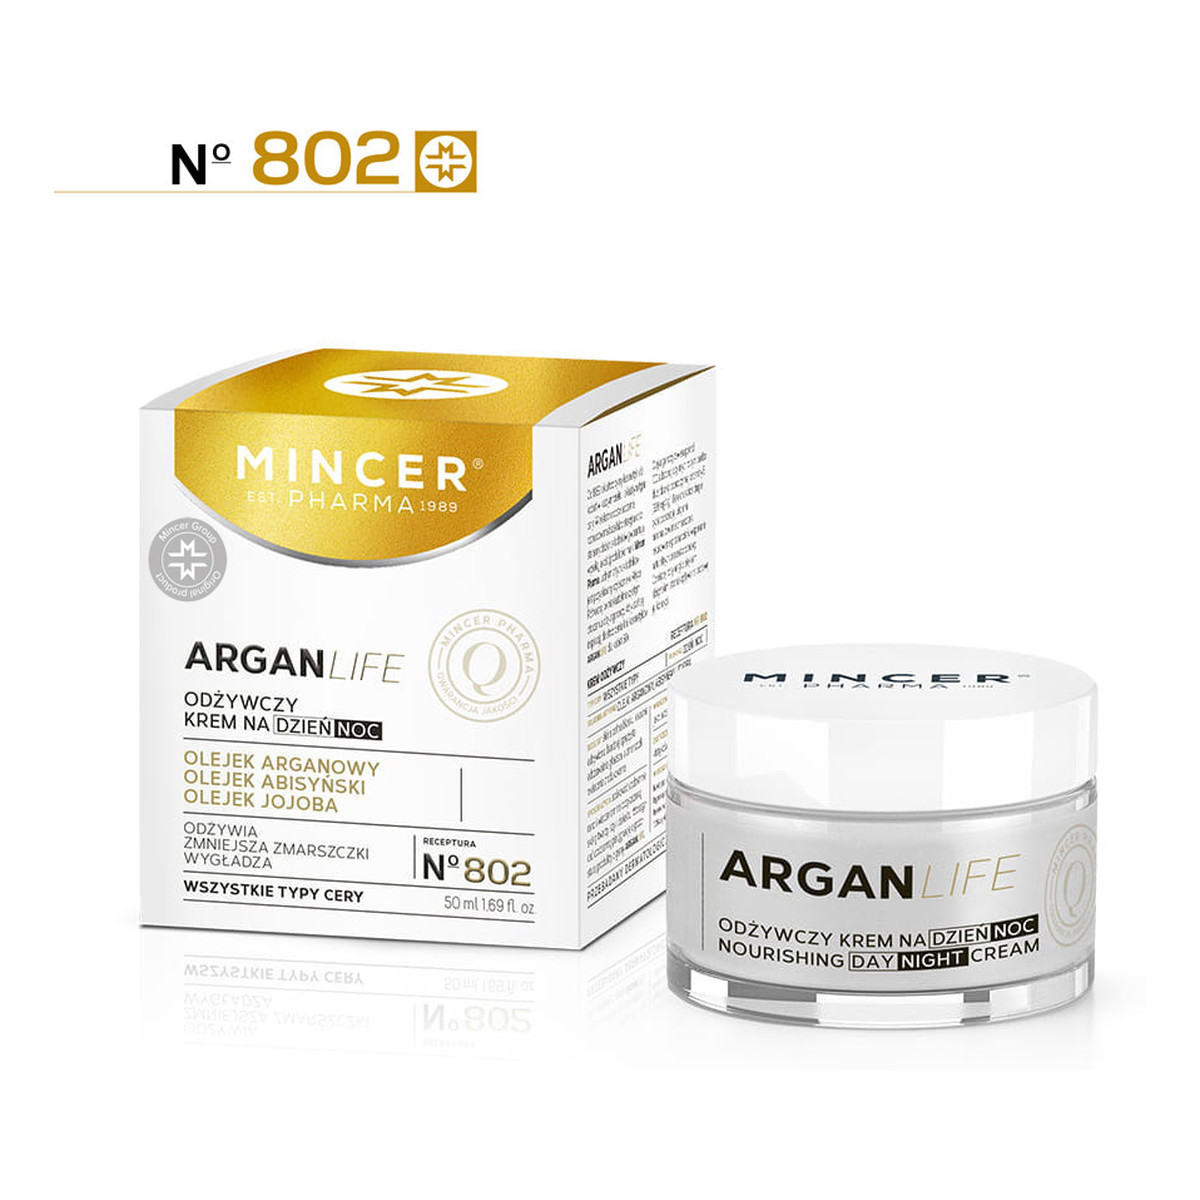 Mincer Pharma Argan Life 50+ Odżywczy Krem Na Dzień i Na Noc No802 50ml